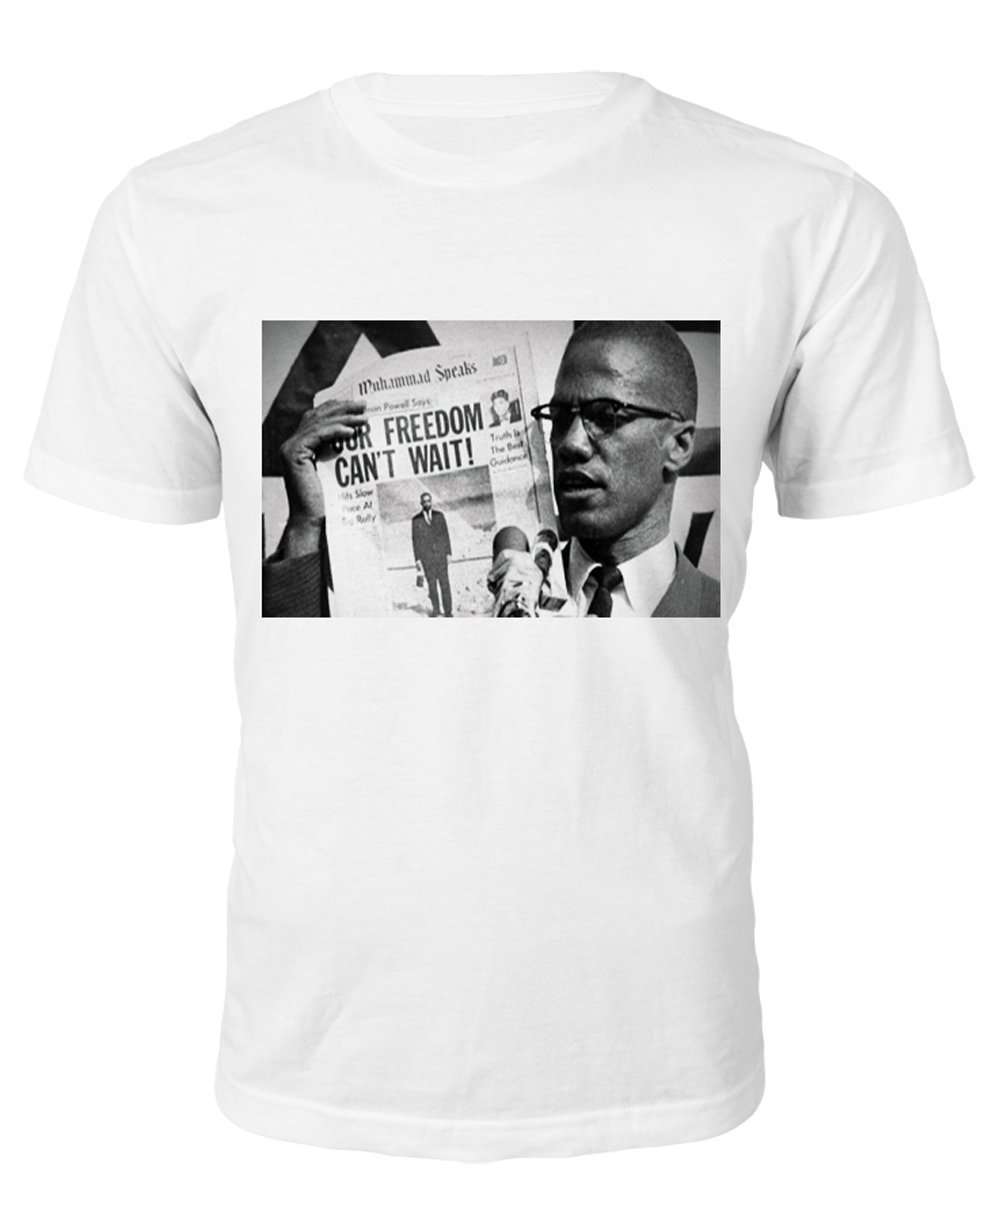 Malcolm X "Freedom" T-shirt - Black Legacy